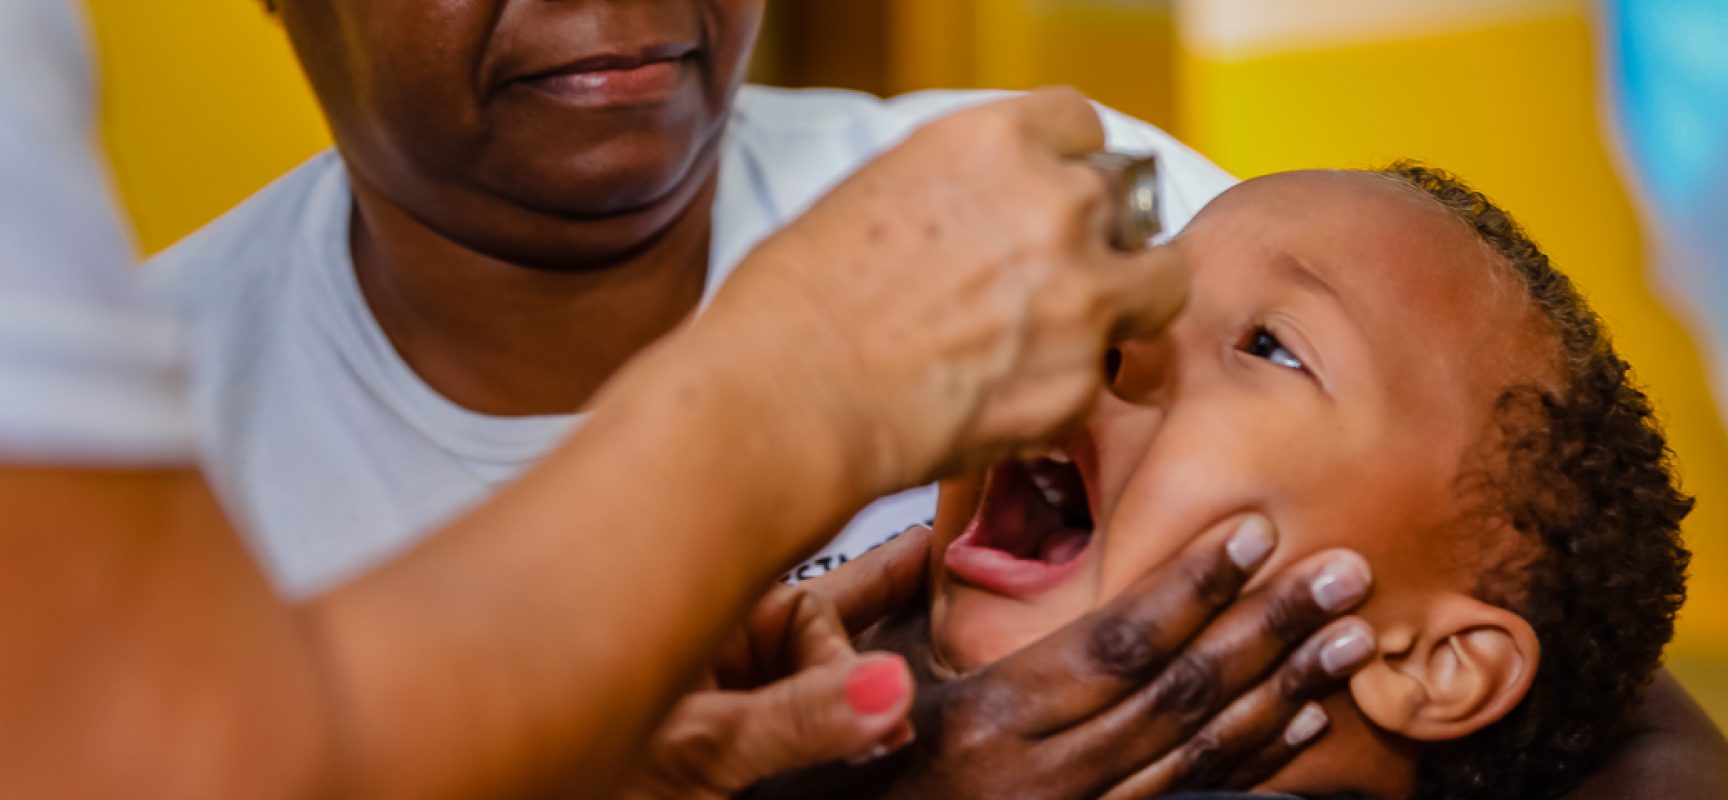 Campanha de vacinação contra o sarampo vai até 13 de março